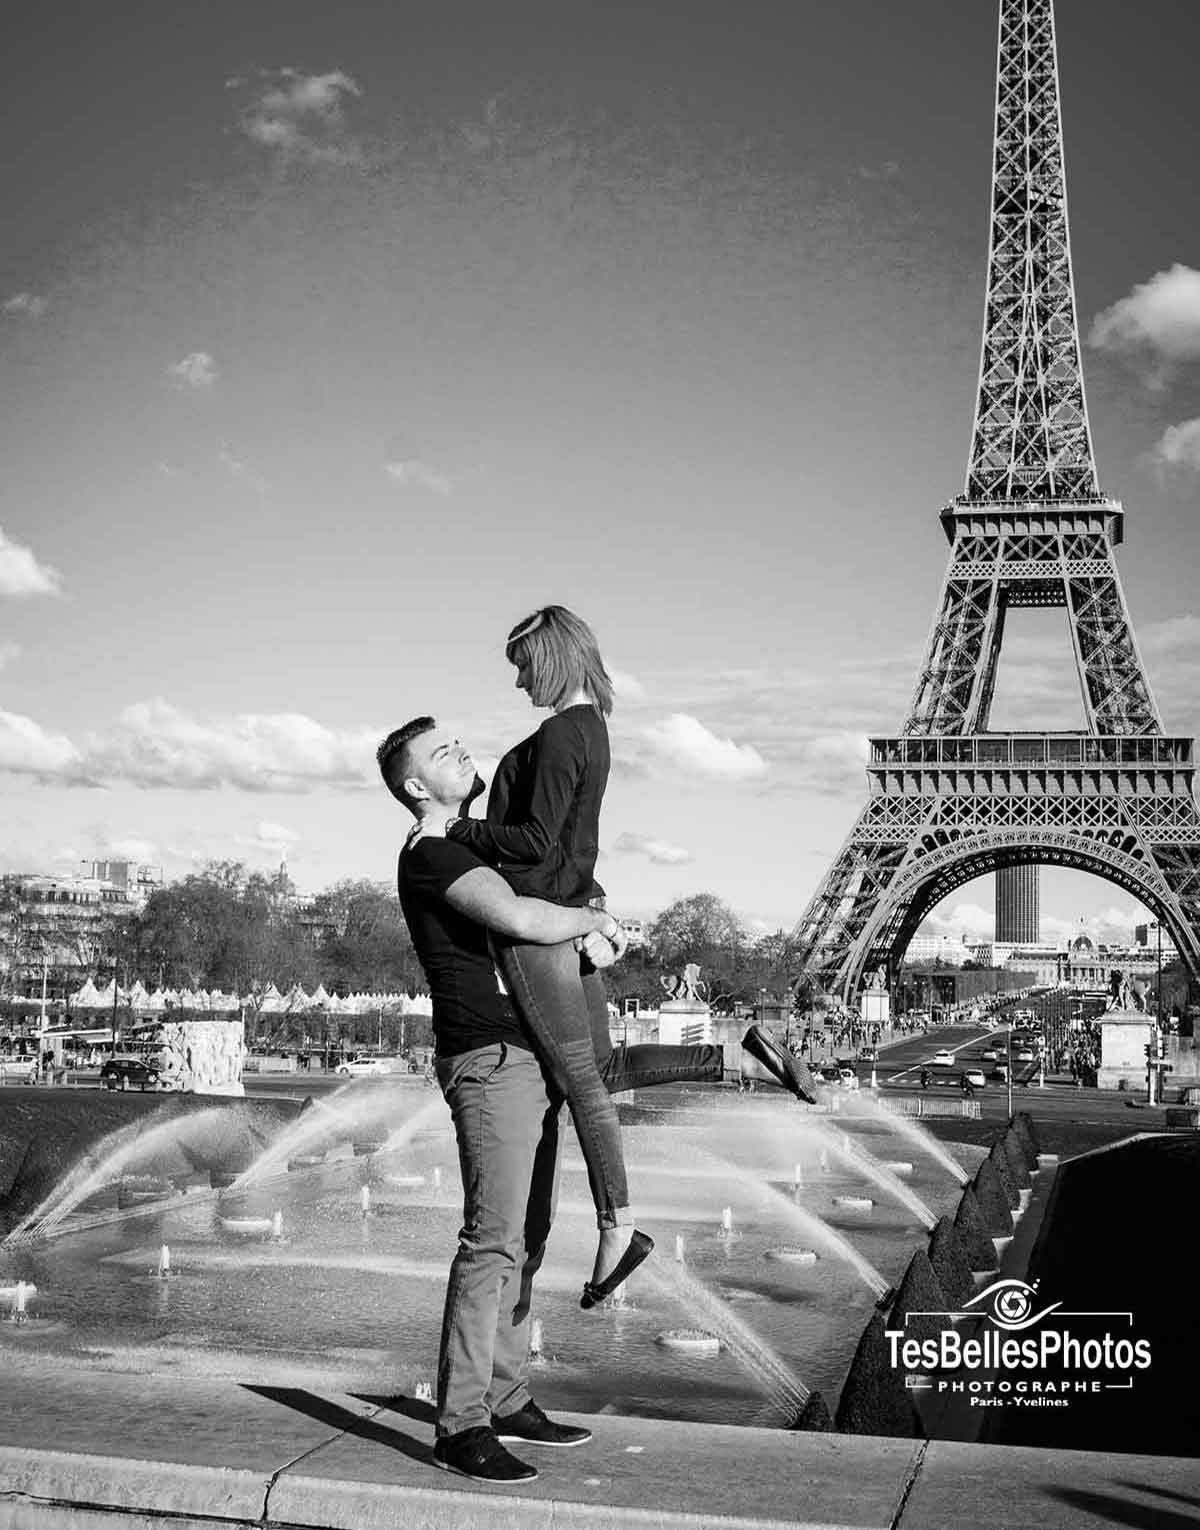 Photographe engagement Paris, séance photo engagement en lifestyle à Paris, shooting photo couple engagement Paris Tour Eiffel